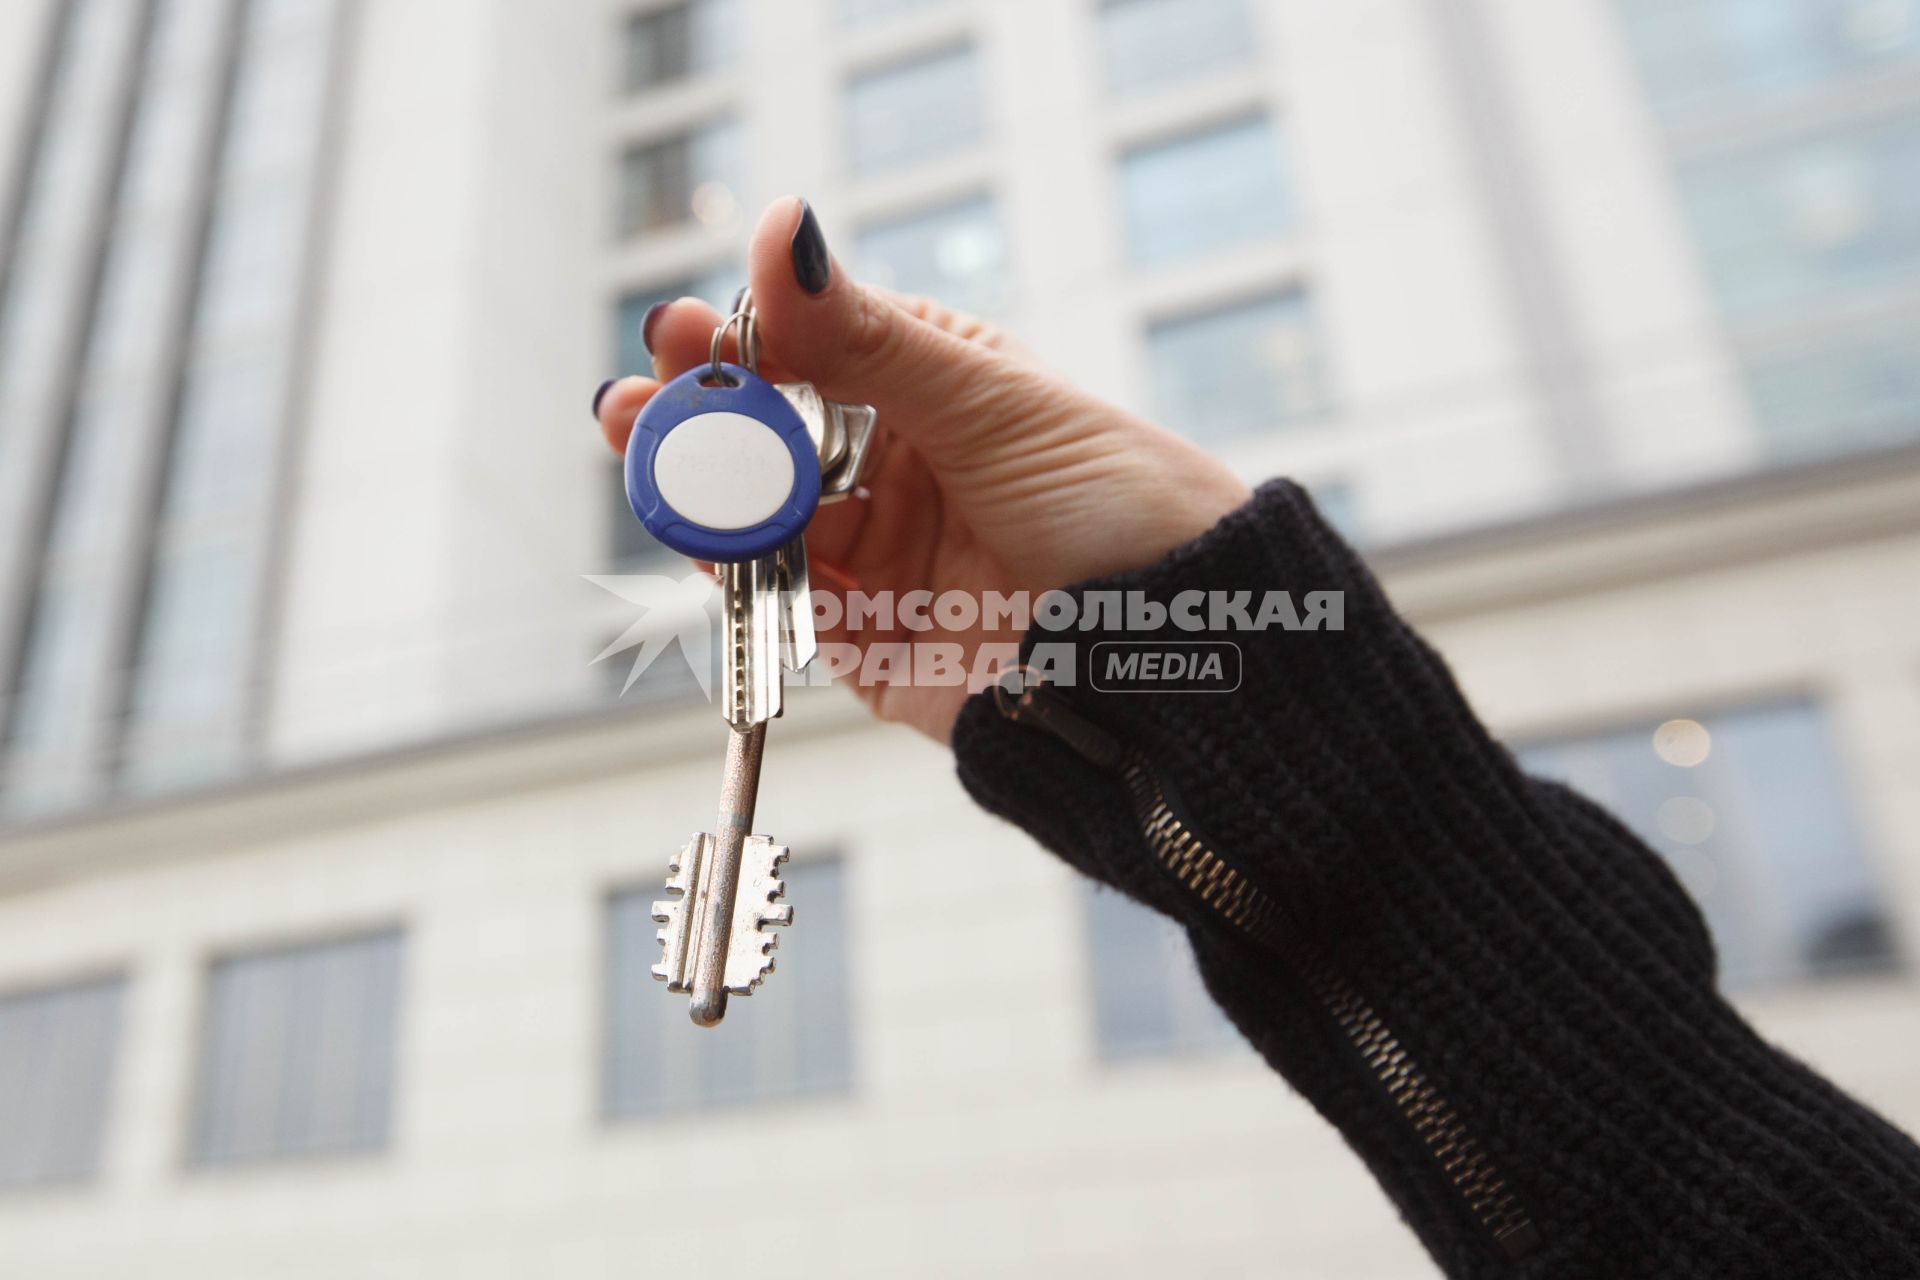 Санкт-Петербург.  Ключи от квартиры на фоне многоэтажного жилого дома.